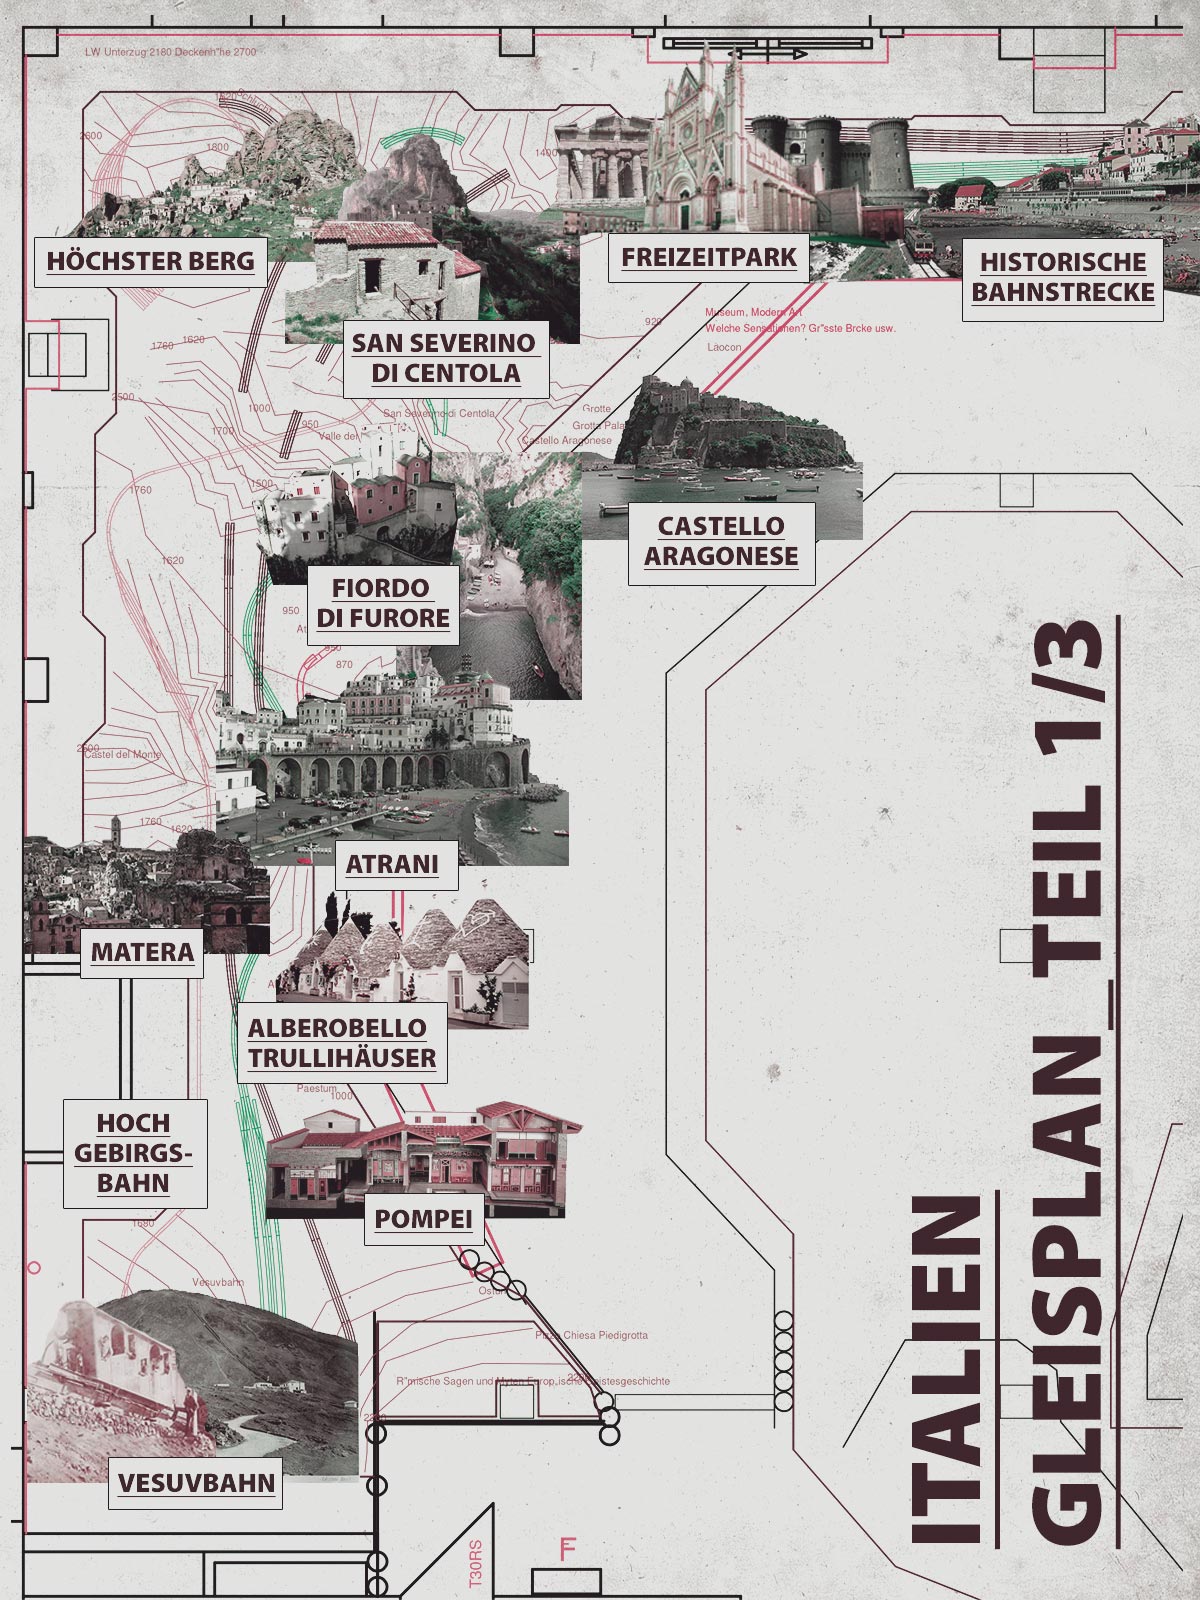 Der Gleisplan für die Region rund um den Vesuv und die Amalfiküste